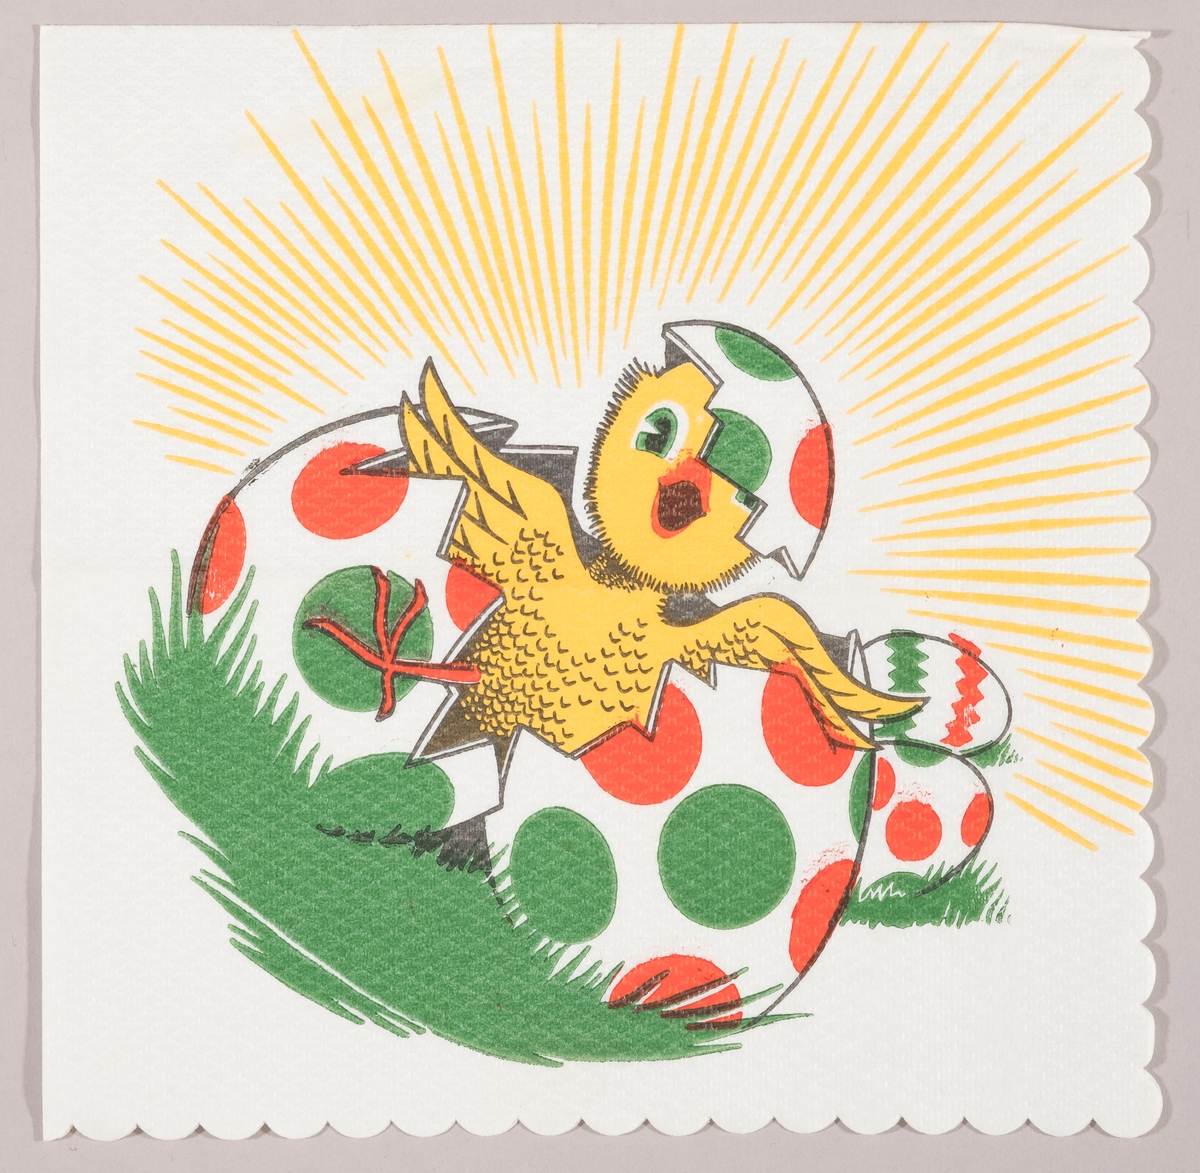 En kylling kommer ut av skallet til et påskeegg med røde og grønne prikker. Påskeegg i bakgrunnen og solståler.